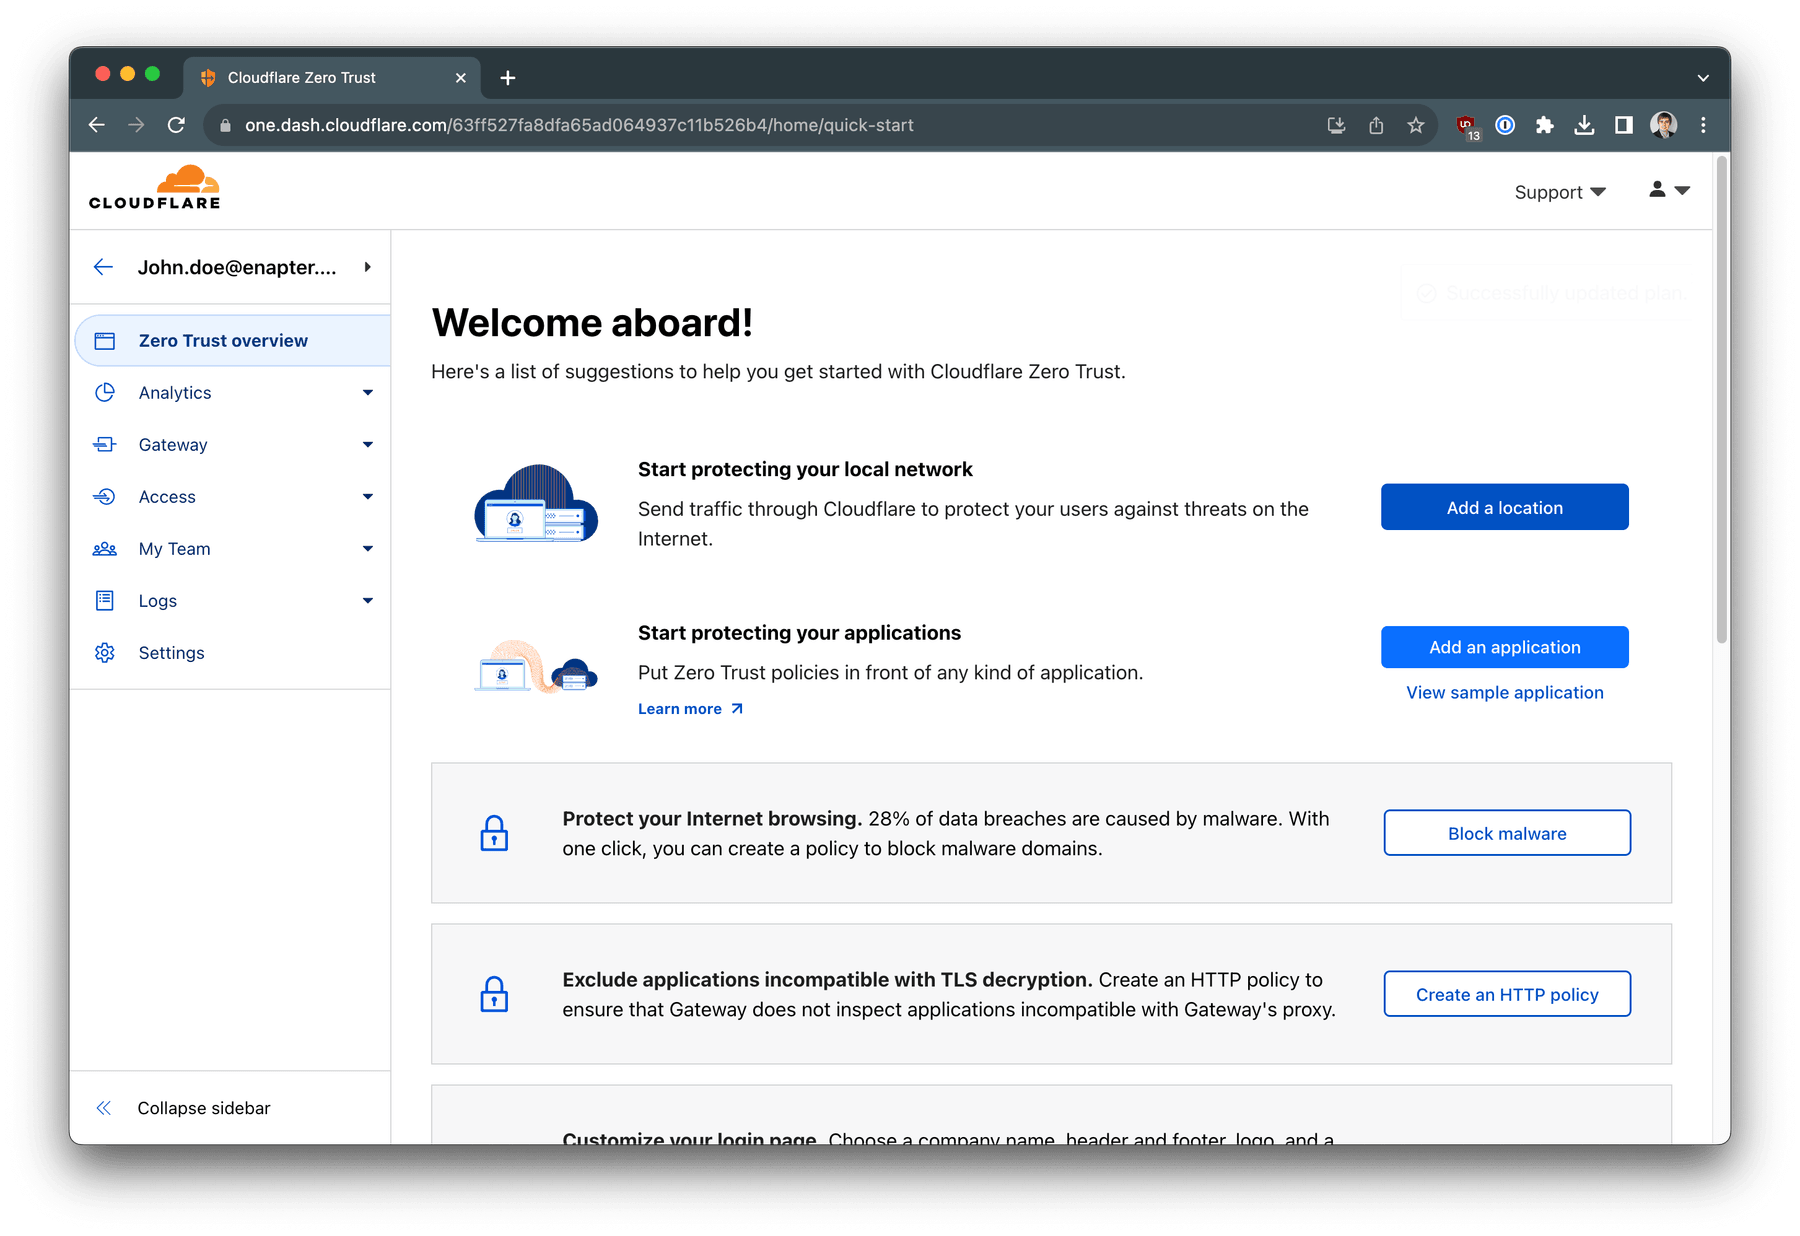 Basic setup of Cloudflare Zero Trust is finished